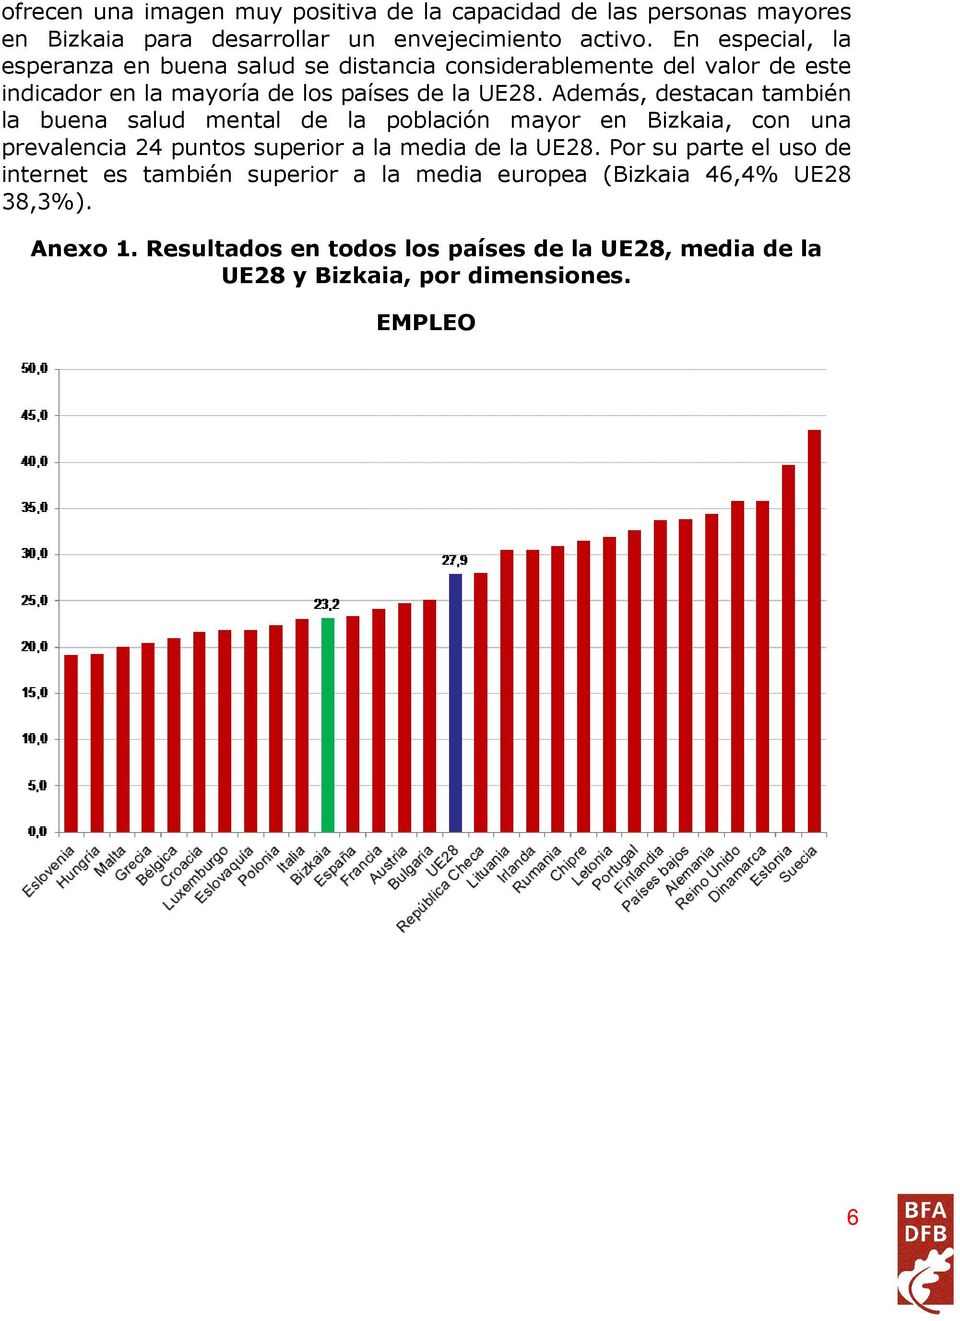 Además, destacan también la buena salud mental de la población mayor en Bizkaia, con una prevalencia 24 puntos superior a la media de la UE28.